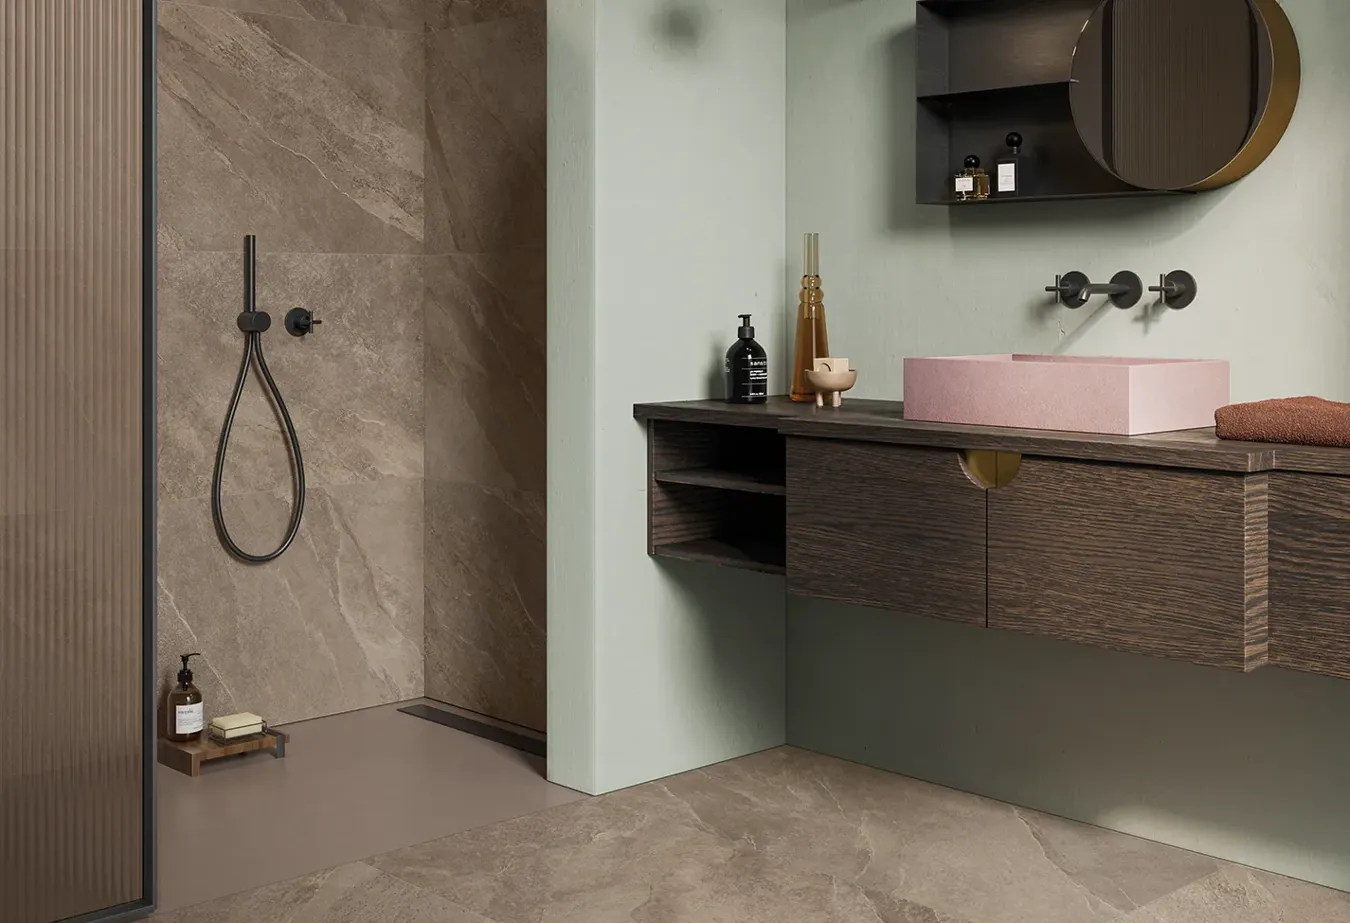 Bagno chic con rivestimento e pavimento in gres porcellanato Ubik Walnut effetto ardesia, mobile in legno scuro e lavabo rosa.